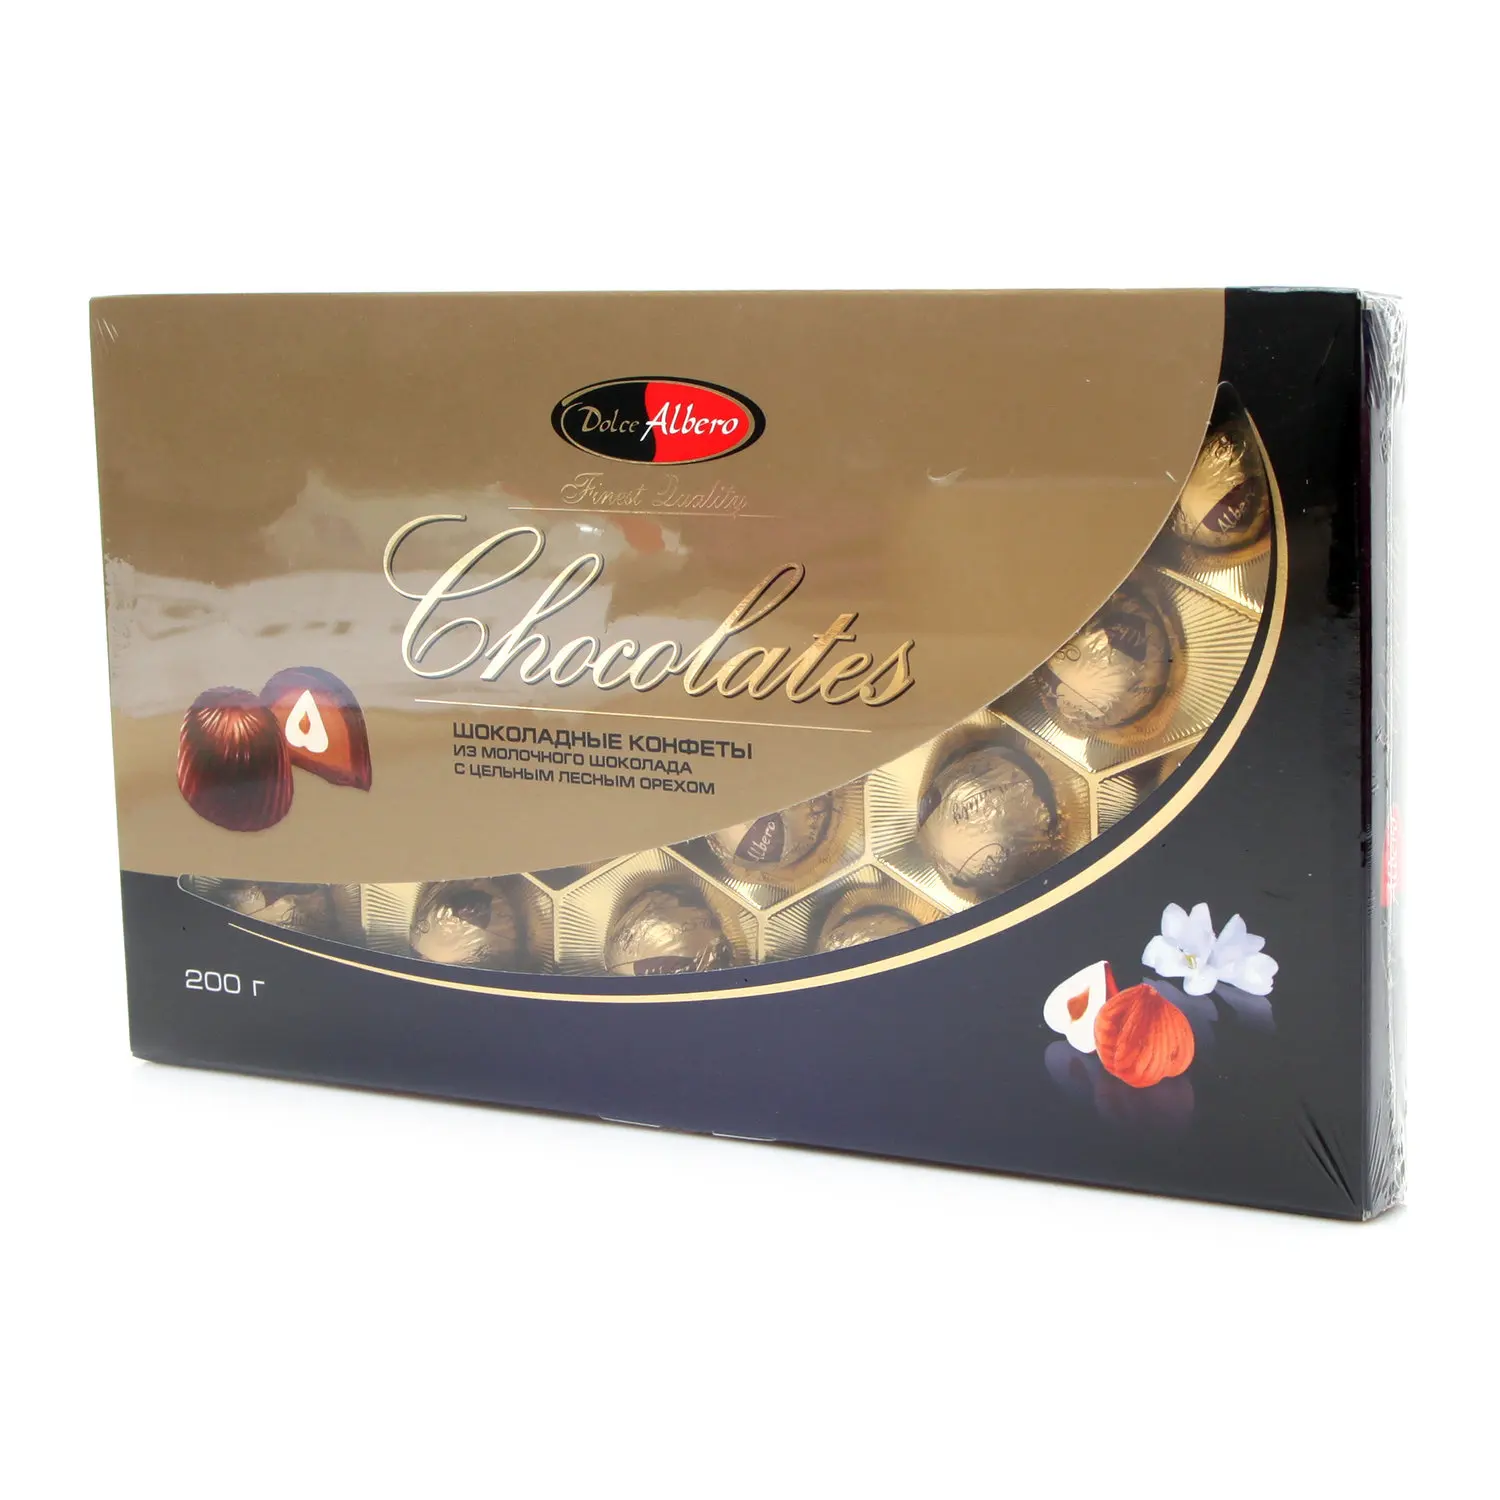 Конфеты шоколадные с цельным лесным орехом ТМ Dolce Alberto (Дольче Альберто) | Продукты